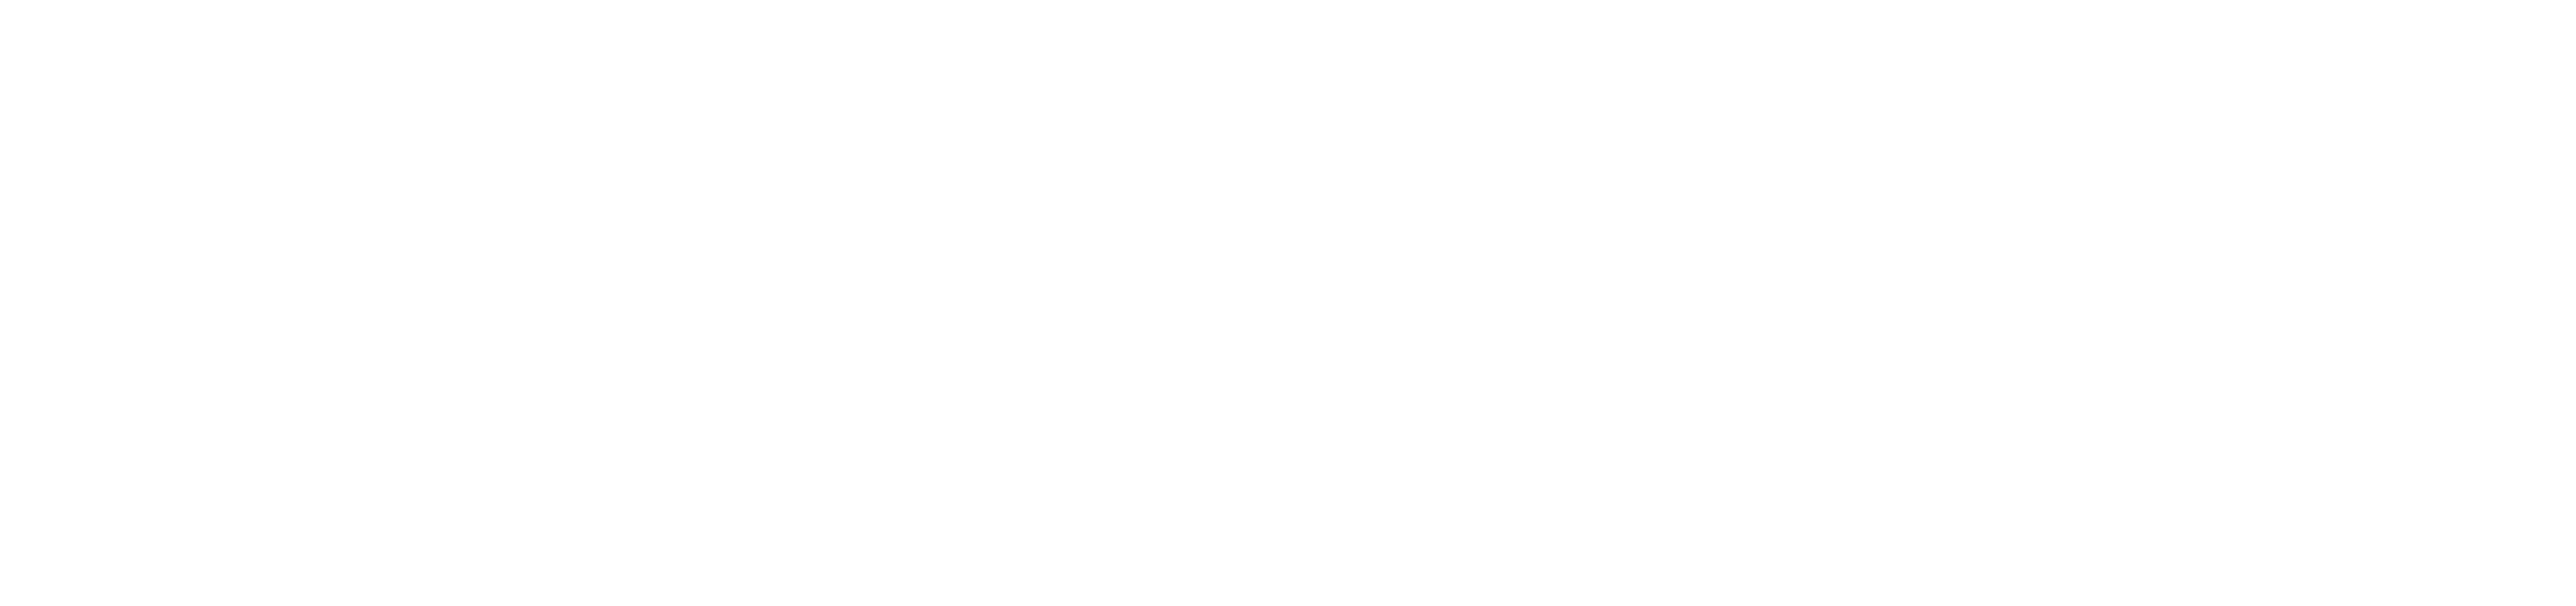 Butler Eagle Logo PNG image